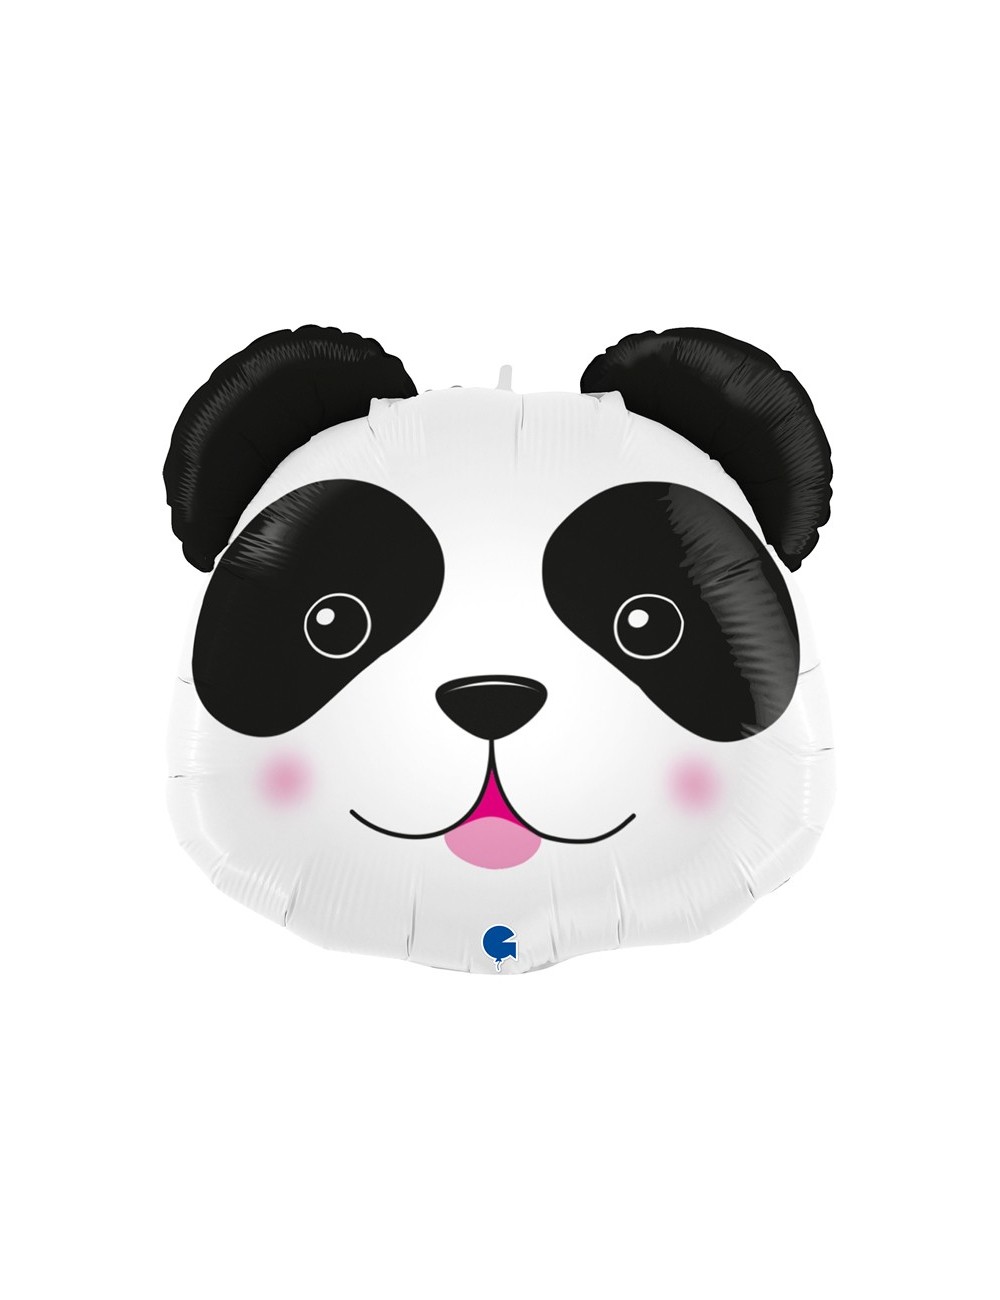 Ballon Panda